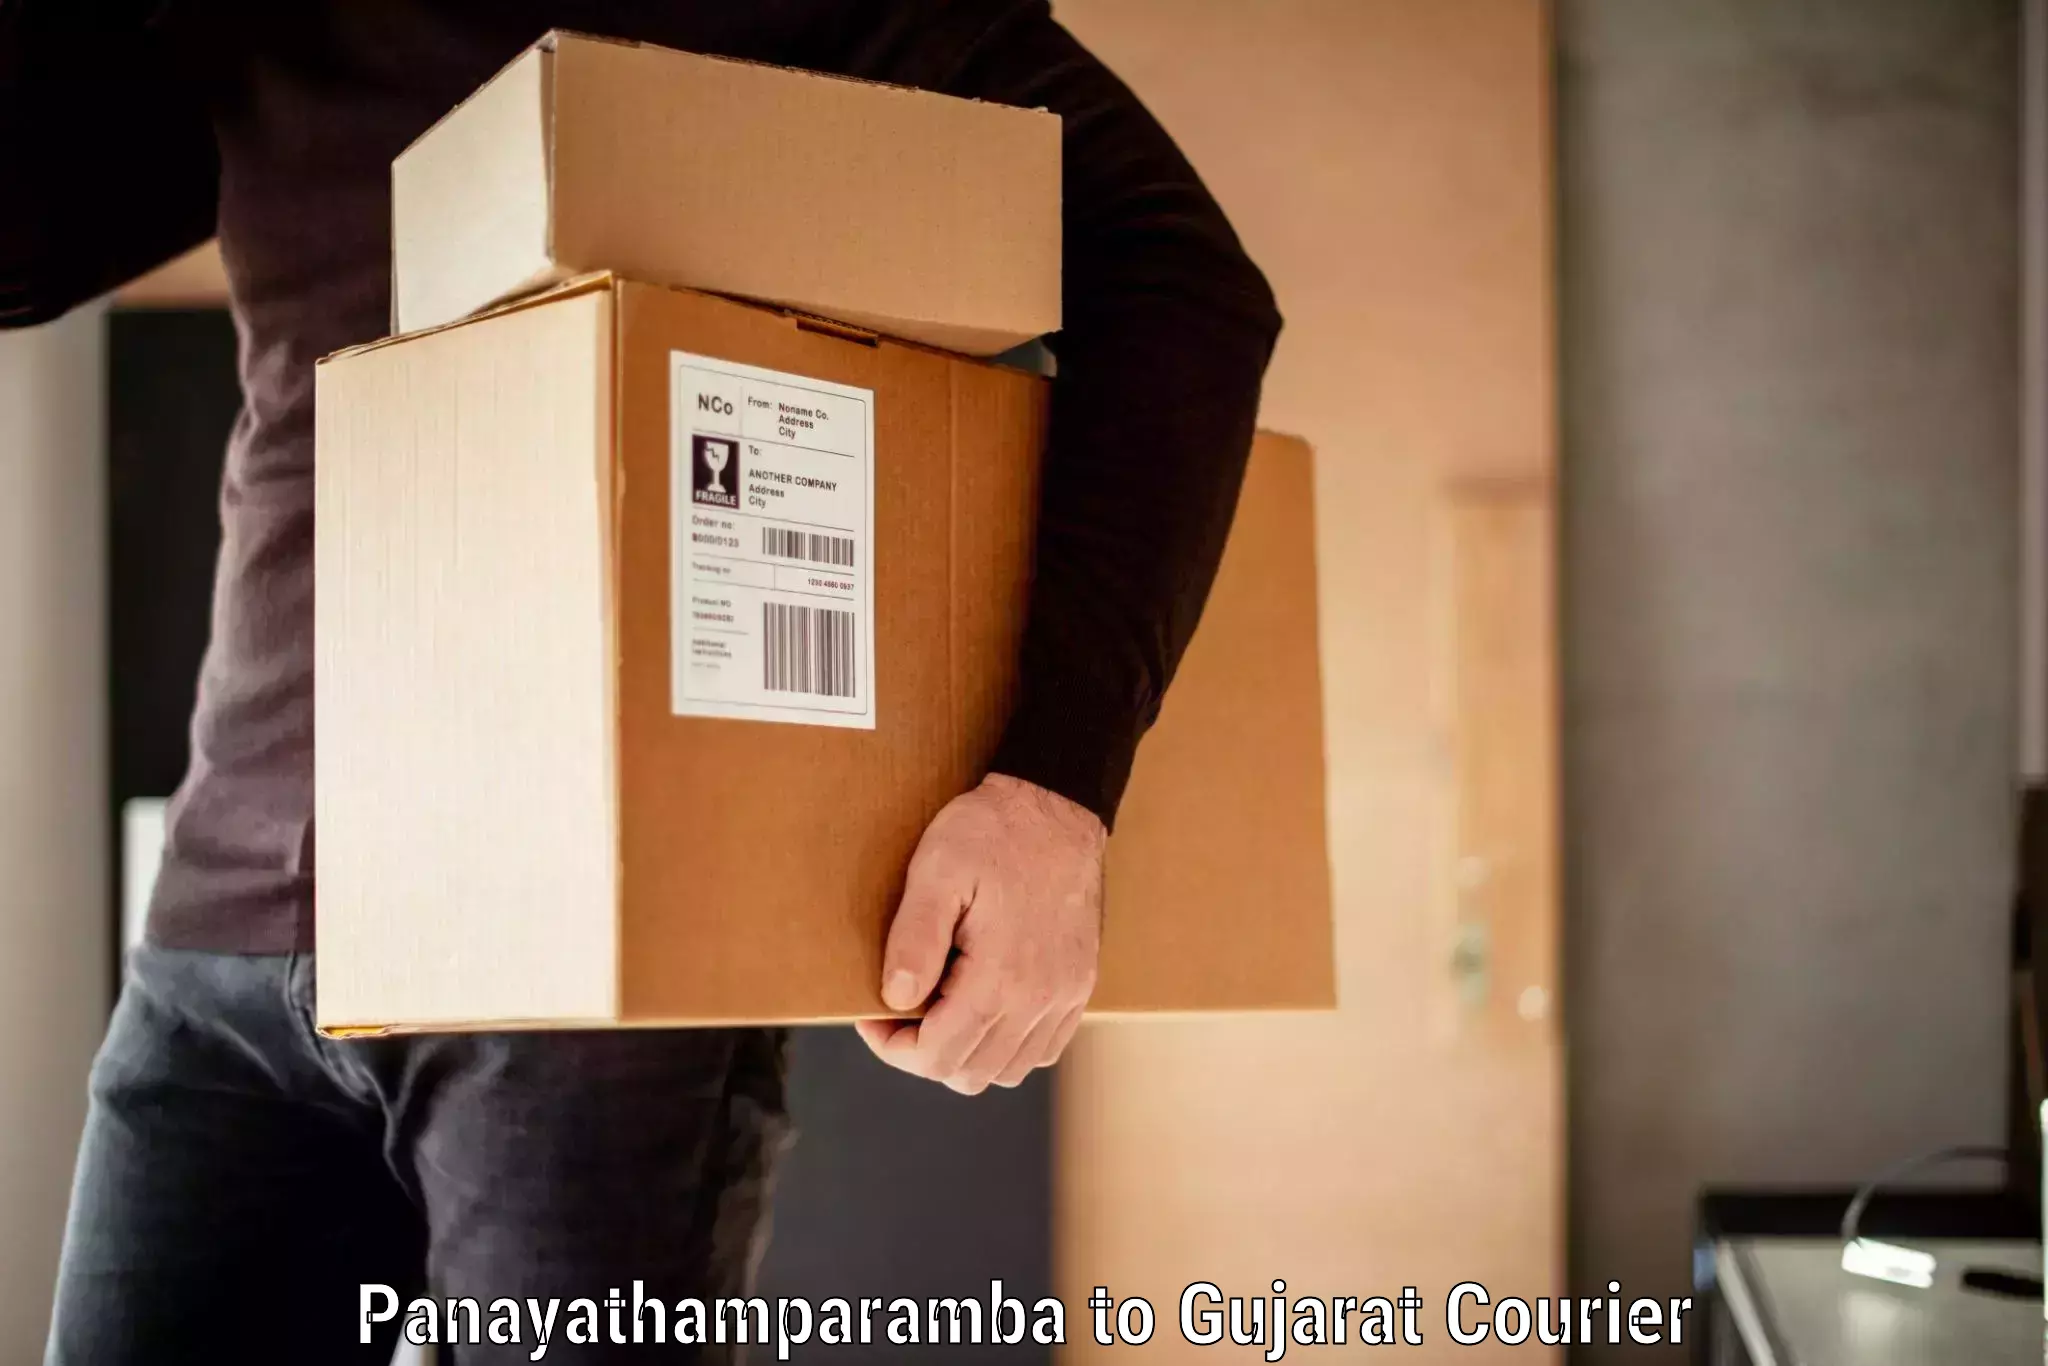 Baggage courier guide Panayathamparamba to Dhasa